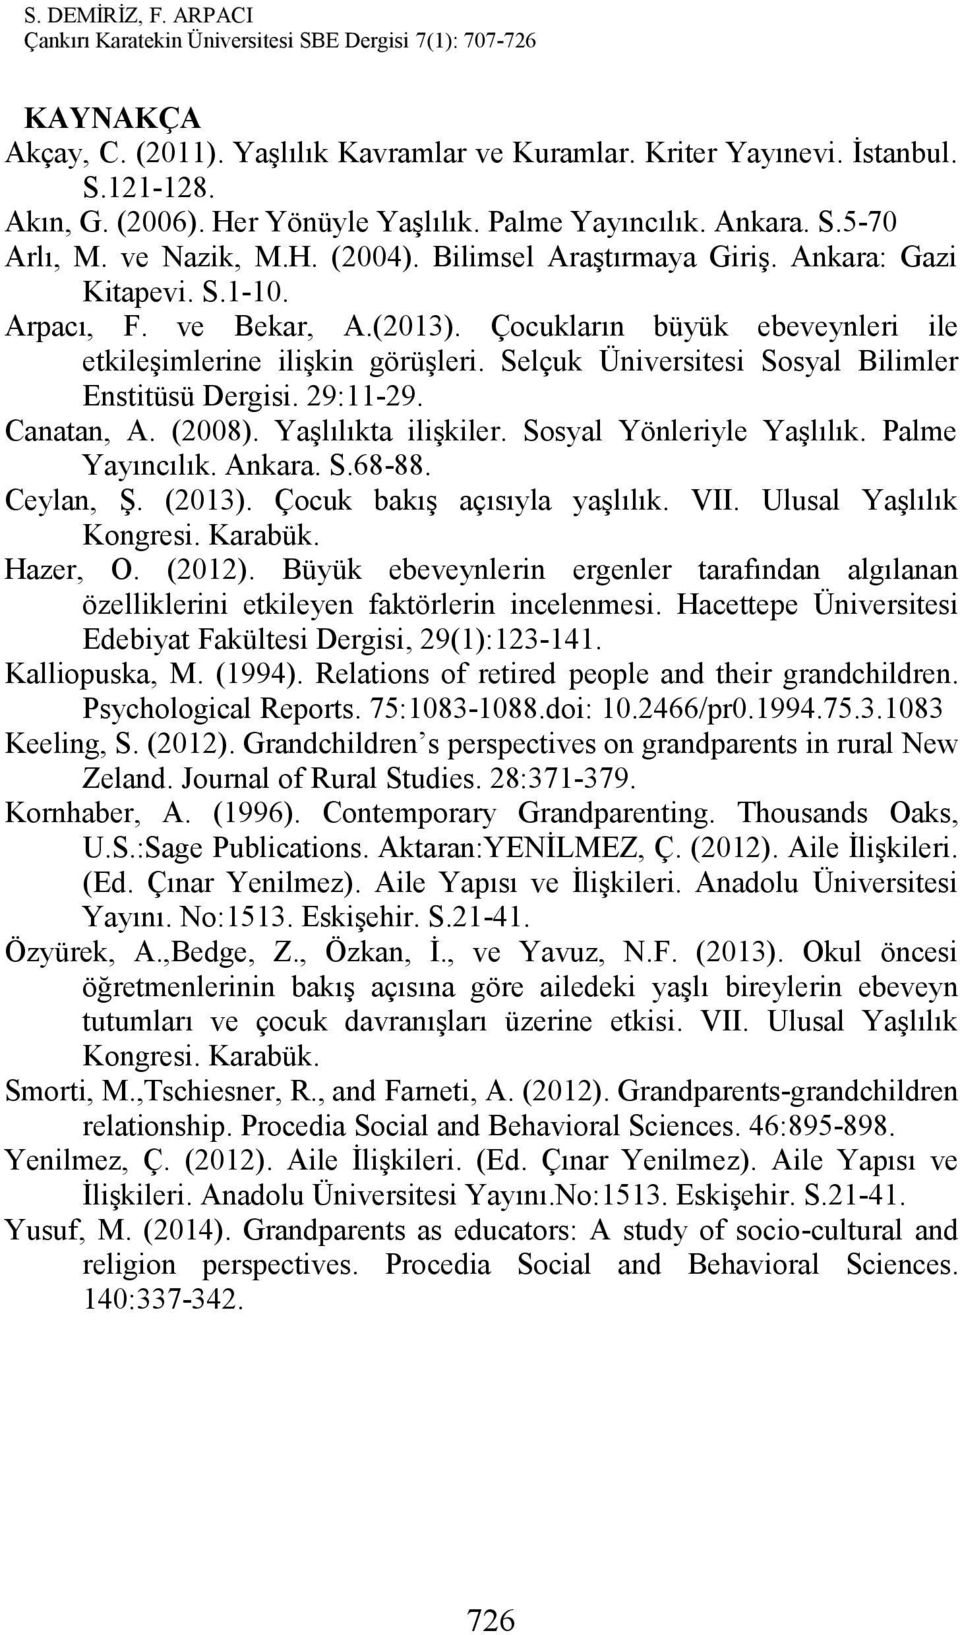 Selçuk Üniversitesi Sosyal Bilimler Enstitüsü Dergisi. 29:11-29. Canatan, A. (2008). Yaşlılıkta ilişkiler. Sosyal Yönleriyle Yaşlılık. Palme Yayıncılık. Ankara. S.68-88. Ceylan, Ş. (2013).